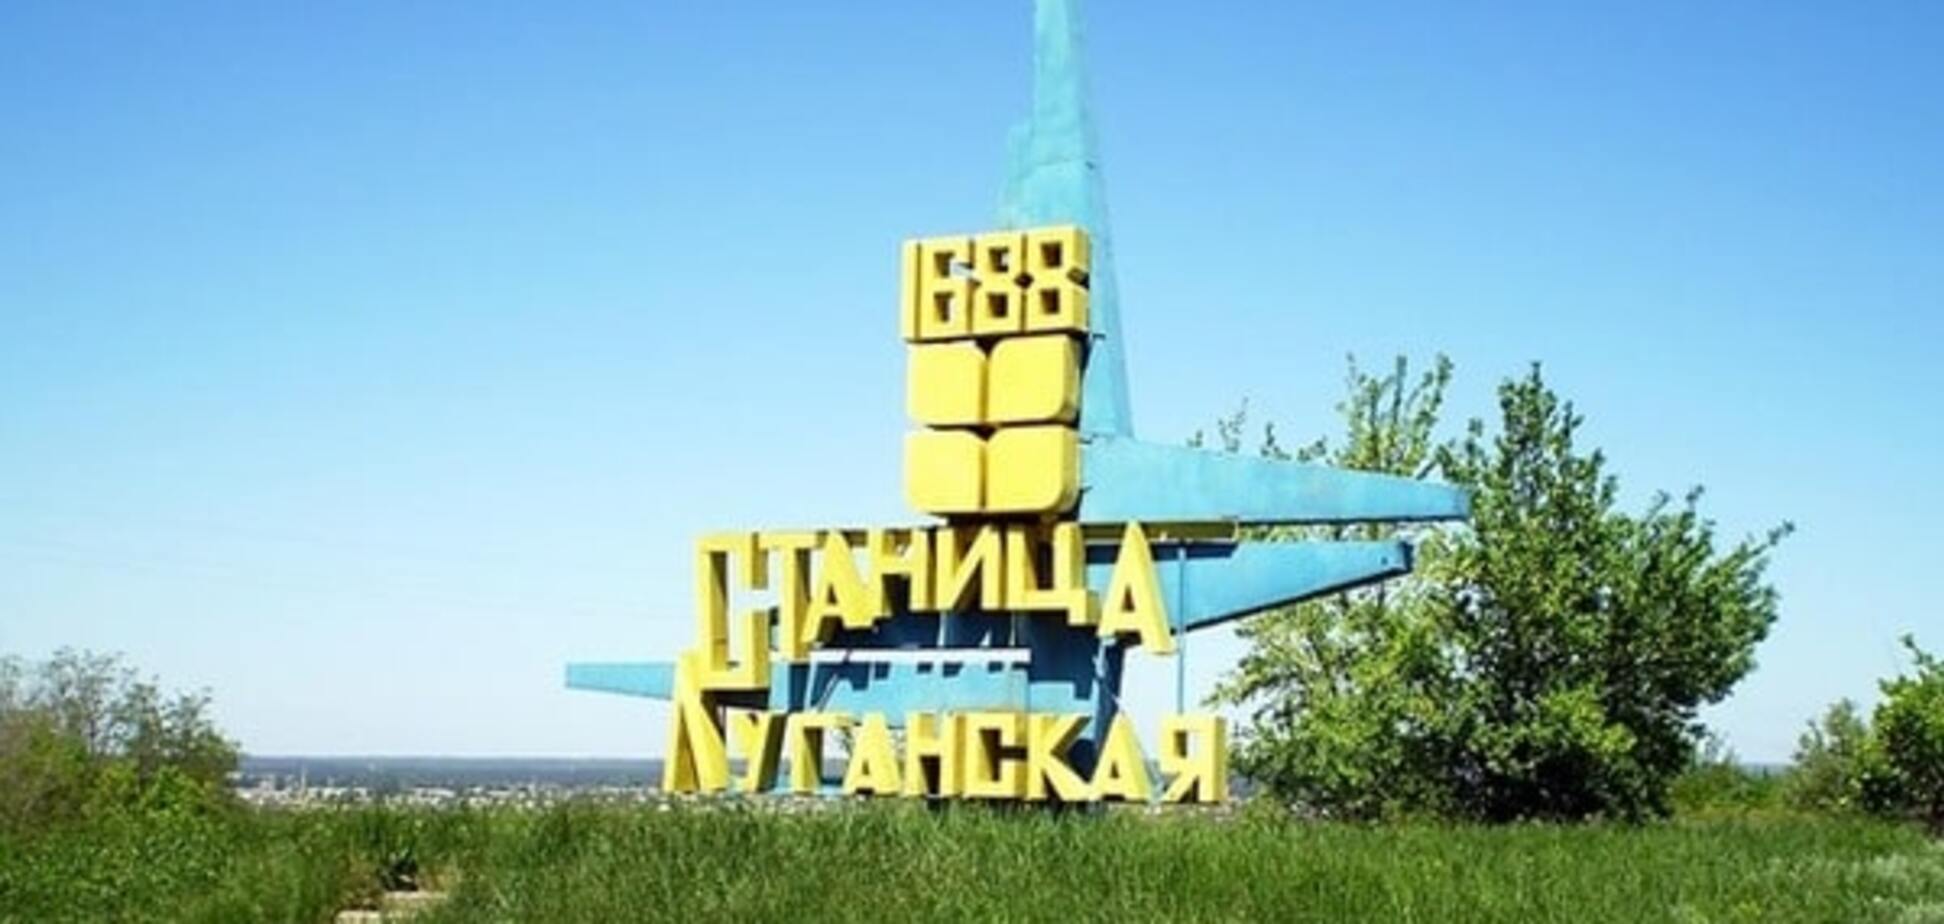 Станица Луганская